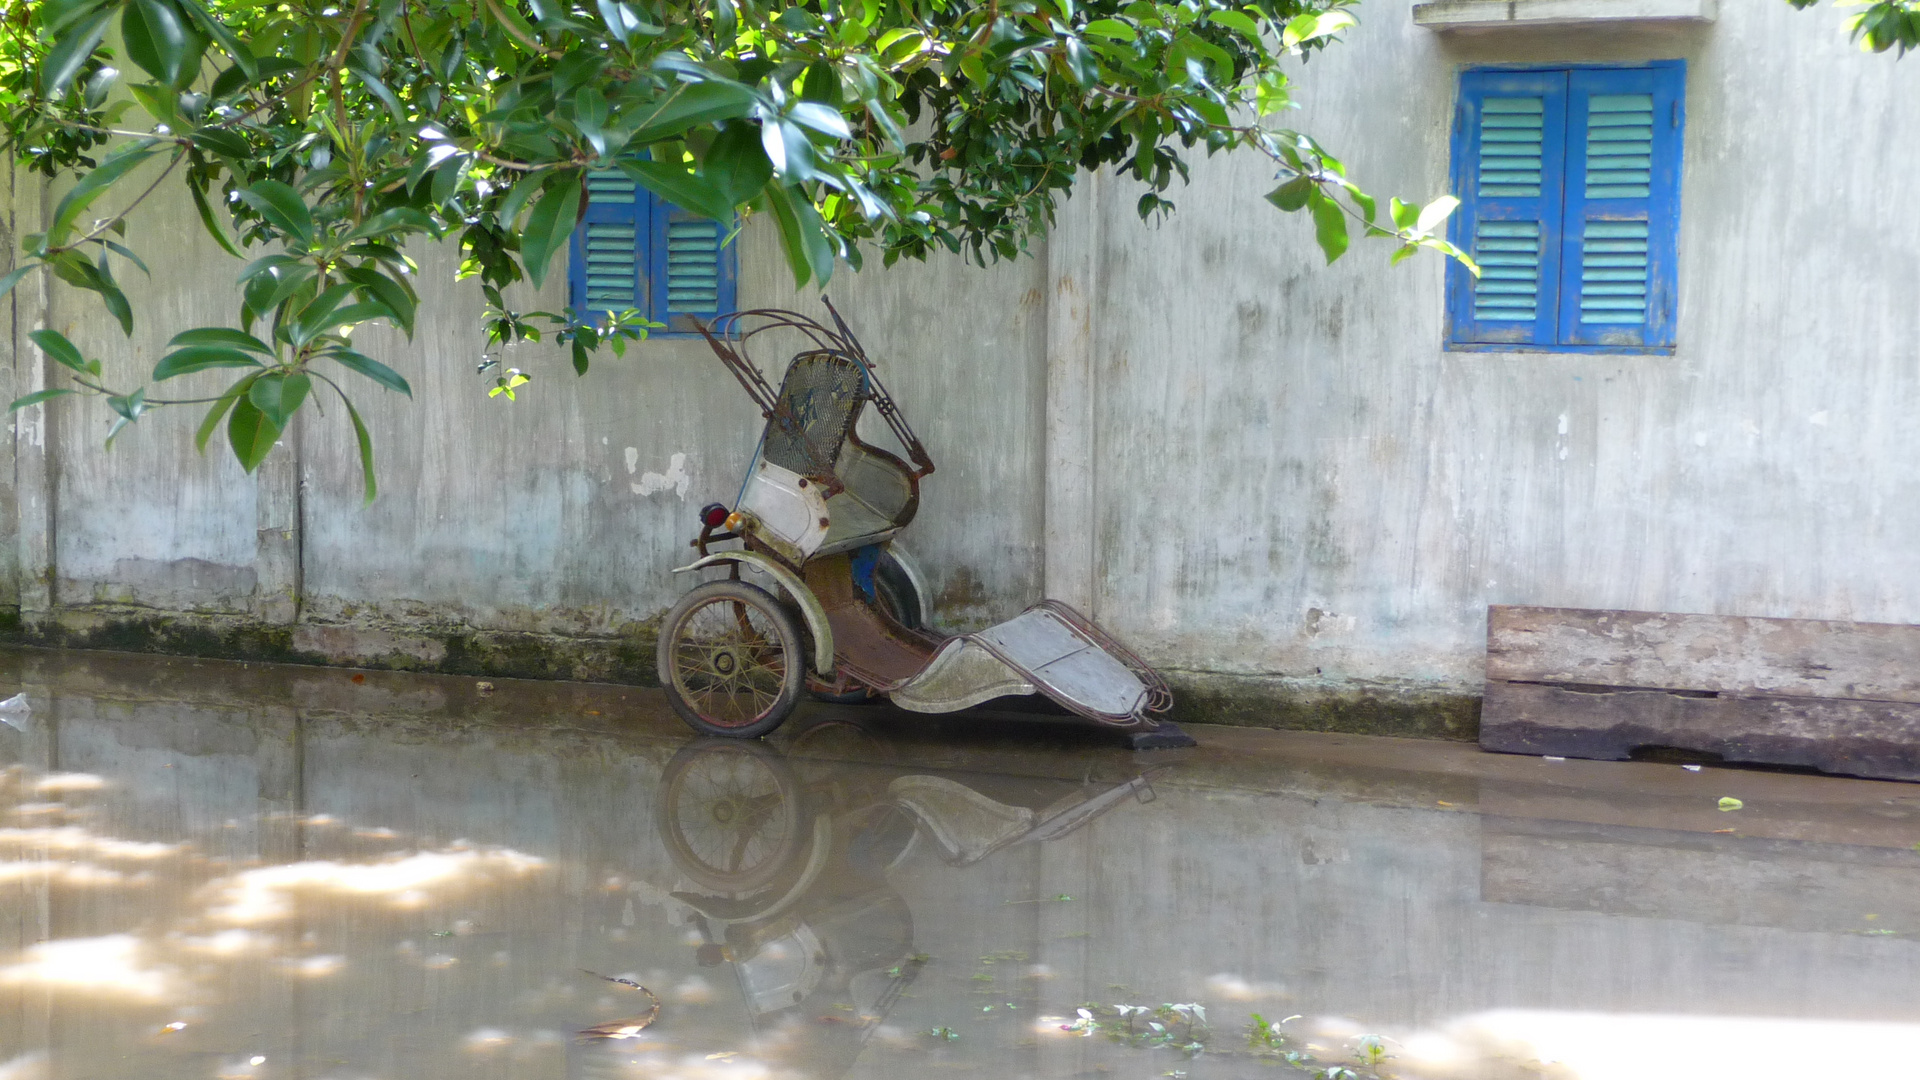 Travel through Vietnam - Mekong Delta 3